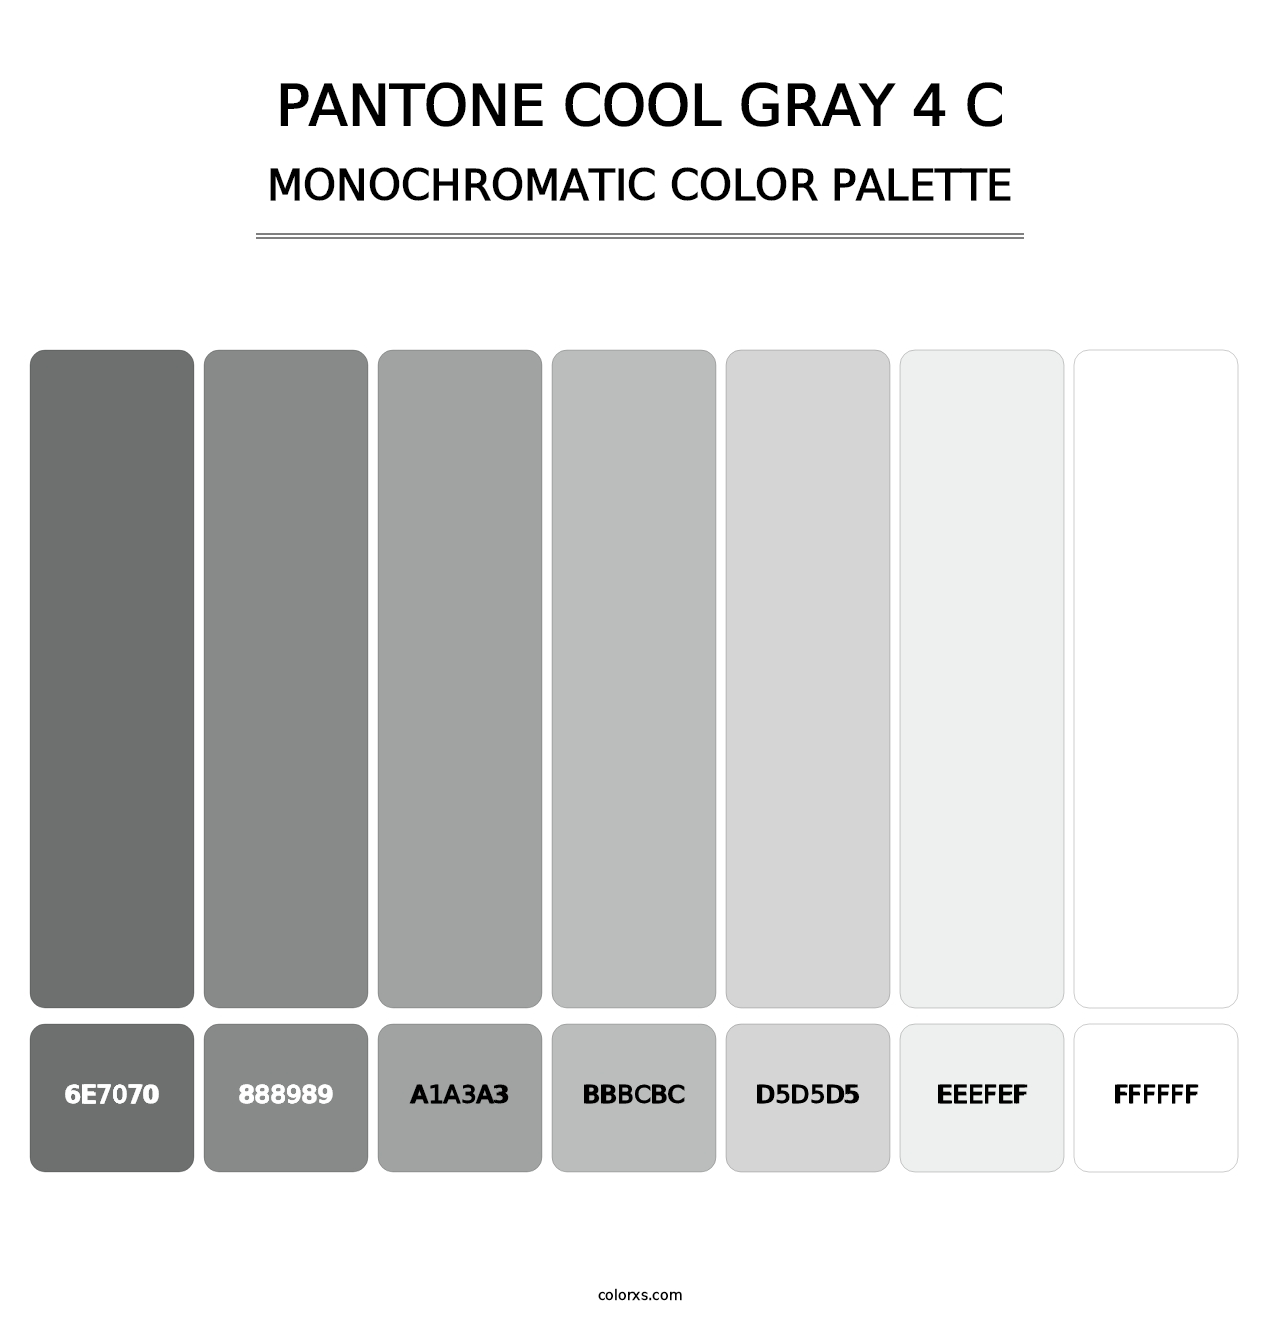 PANTONE Cool Gray 4 C - Monochromatic Color Palette